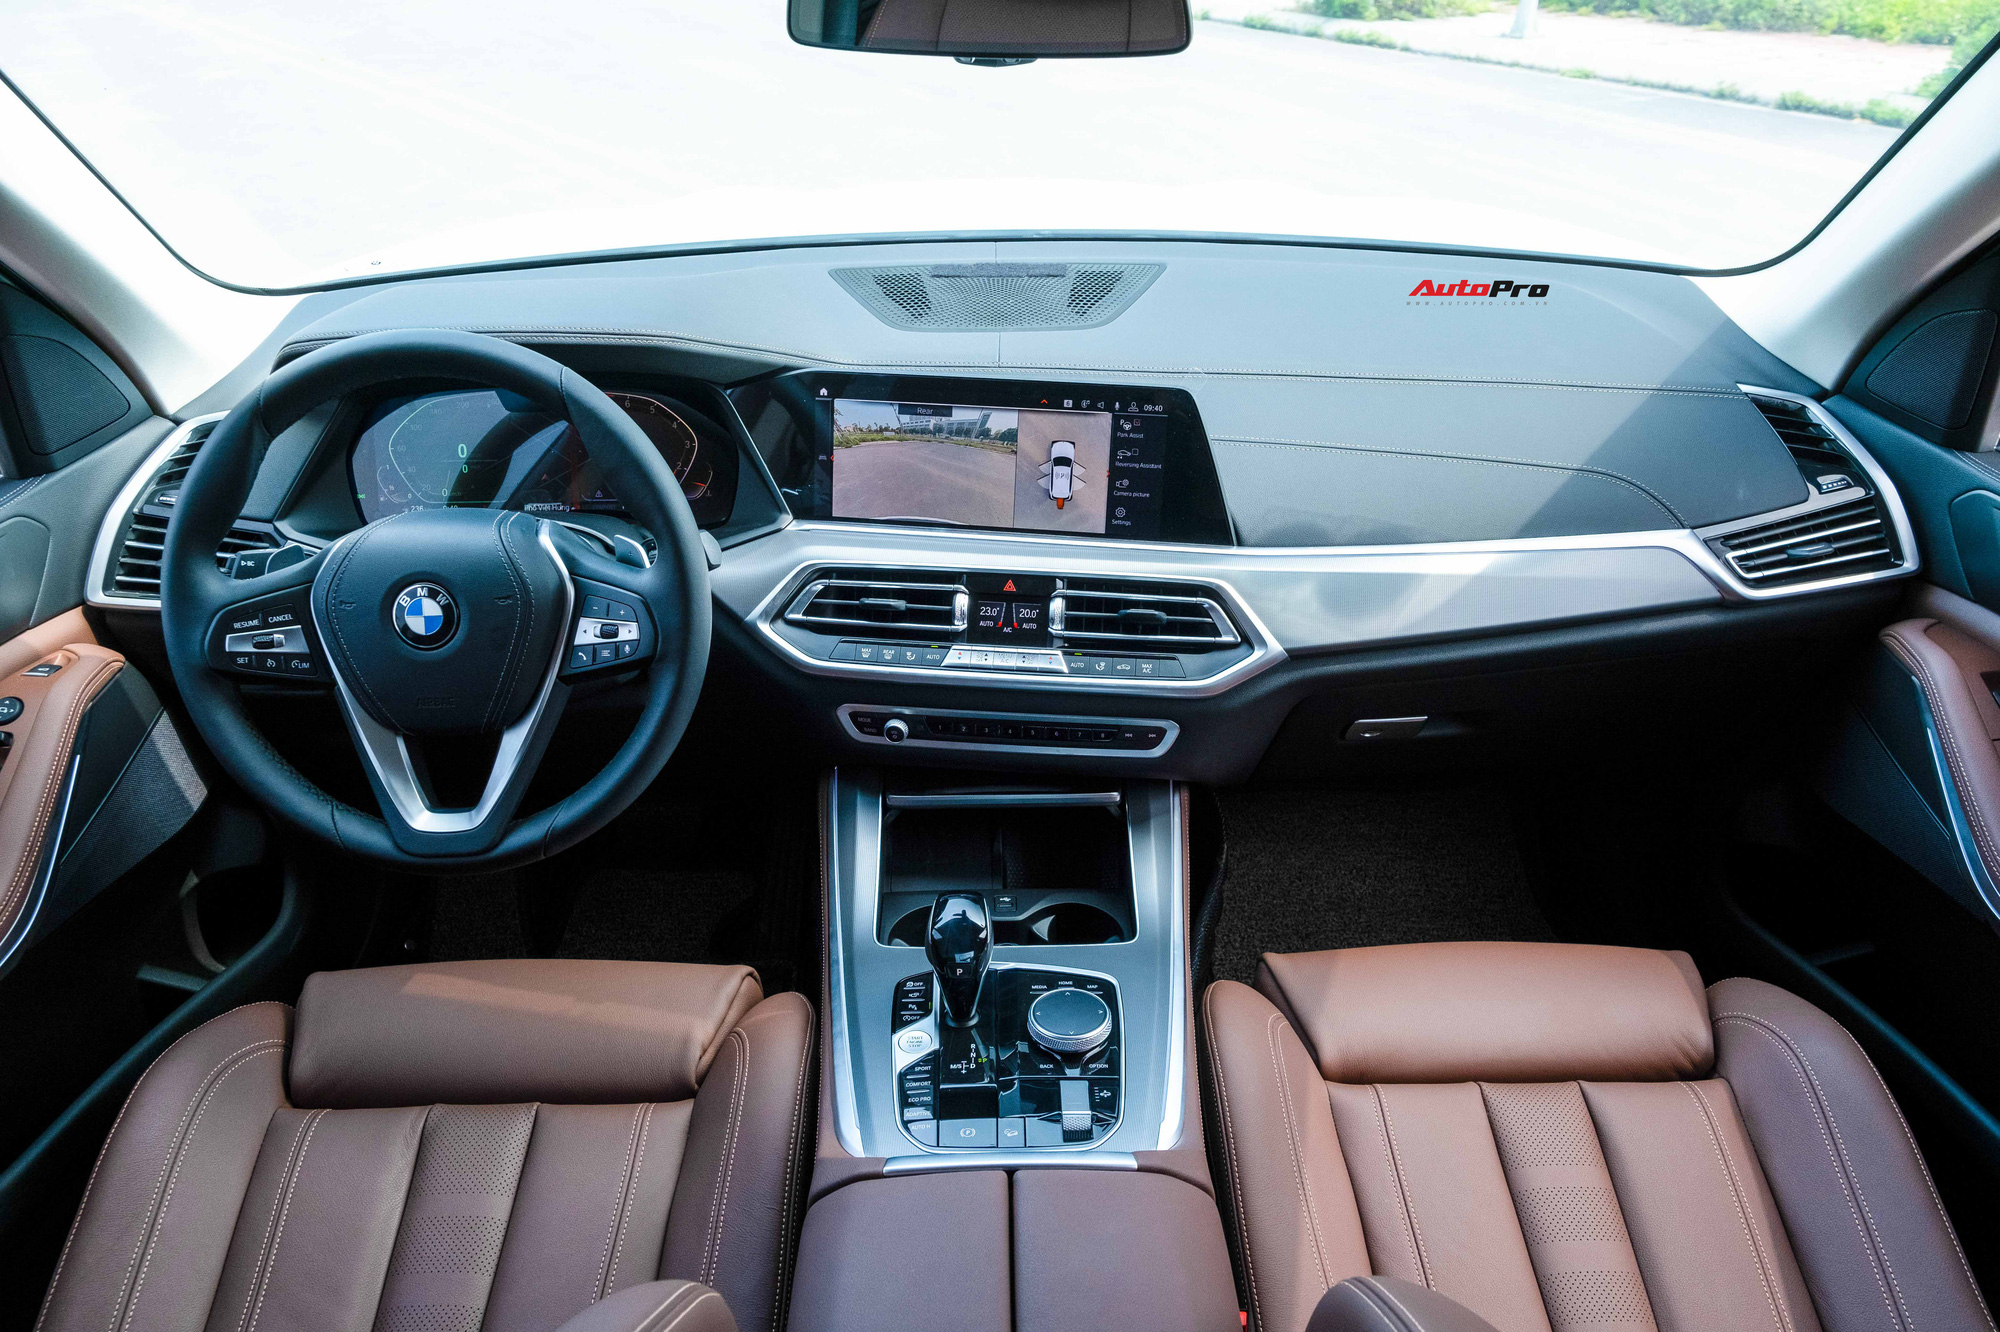 Đại gia bán lại BMW X5 sau 2 tháng sử dụng: Đắt hơn giá niêm yết 100 triệu nhưng ODO là chi tiết gây chú ý - Ảnh 4.